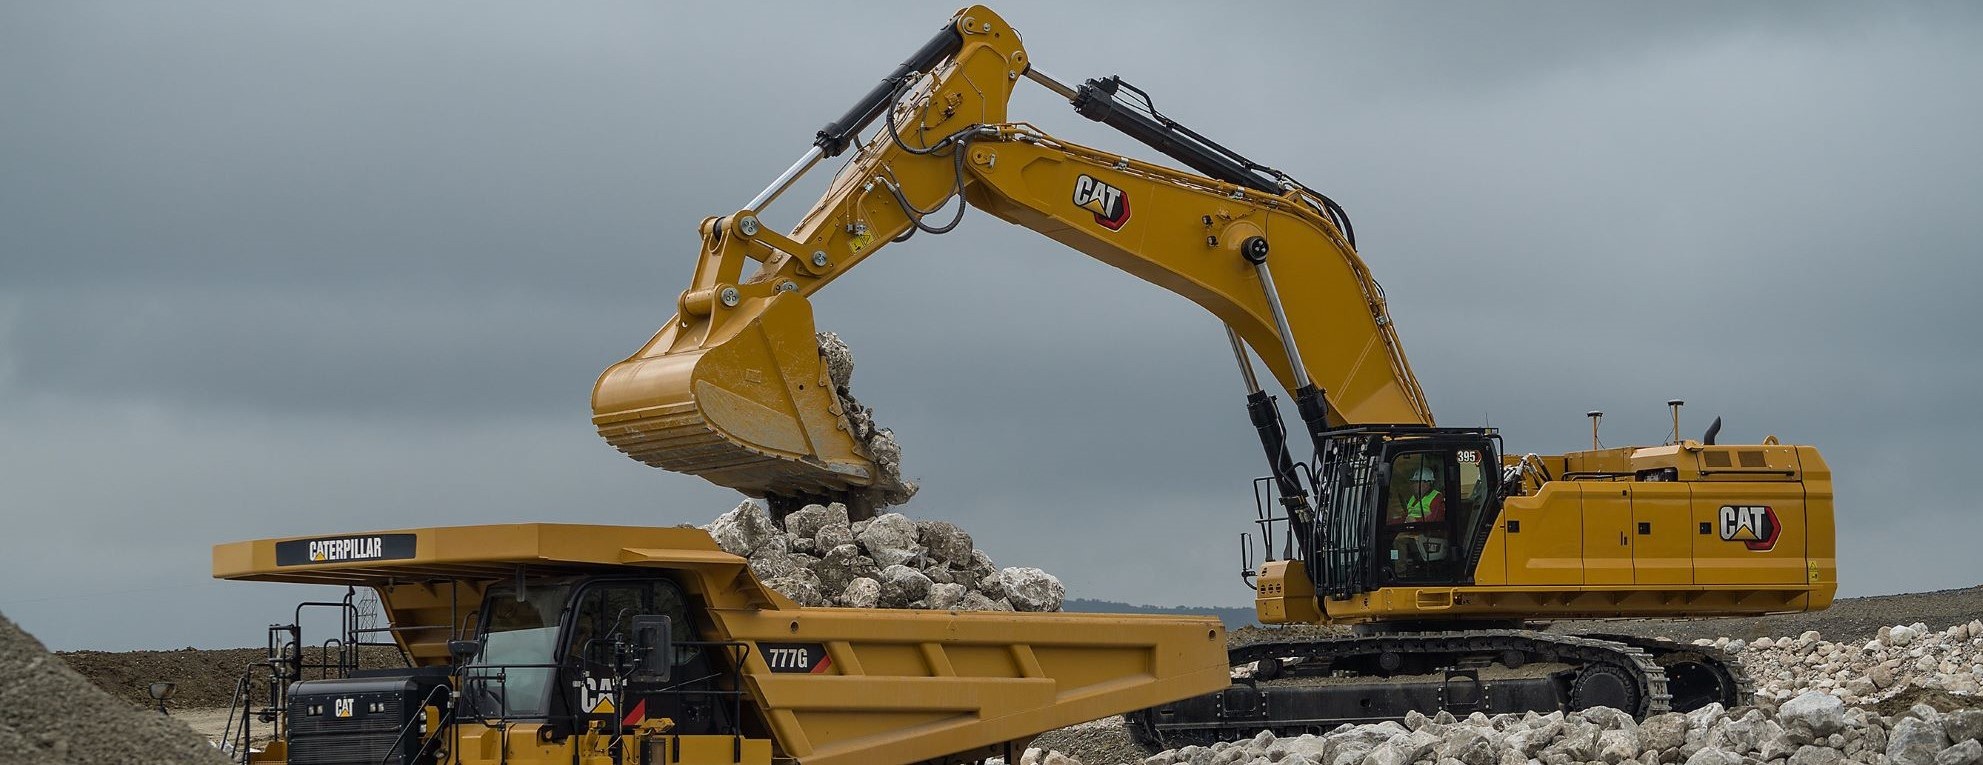 Noul excavator Cat 395 satisface cele mai pretentioase asteptari legate de productivitate